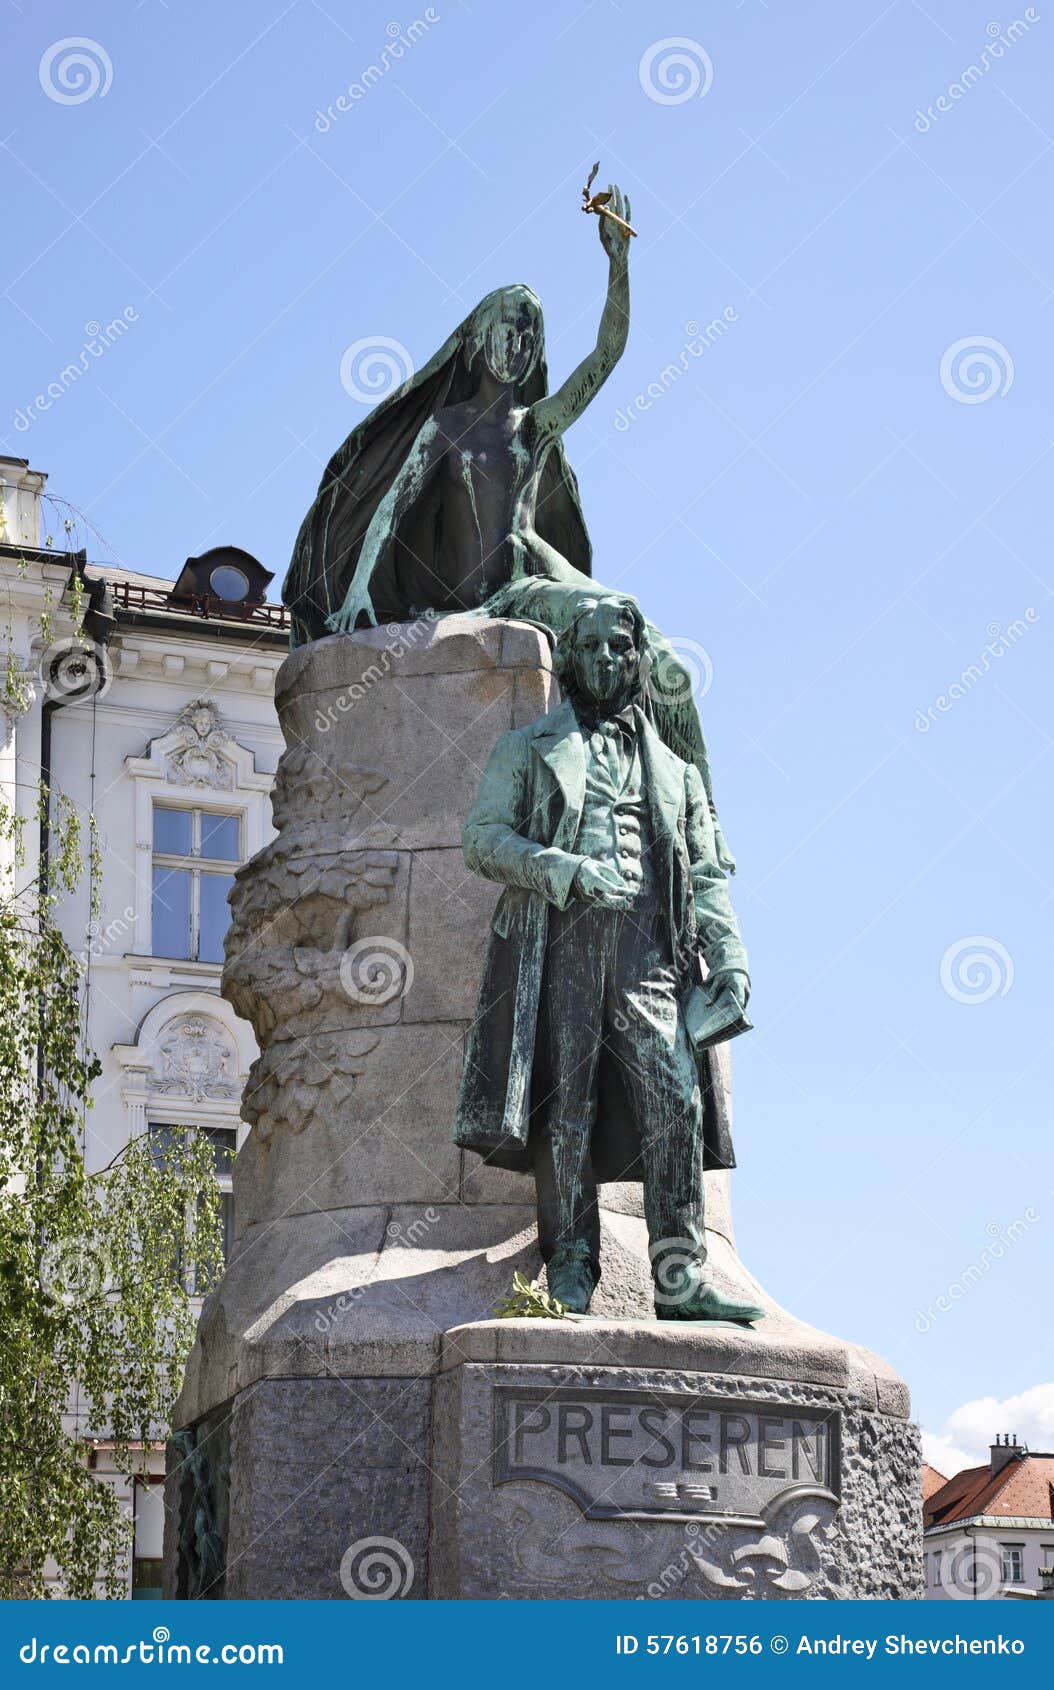 preseren monument in ljubljana. slovenija